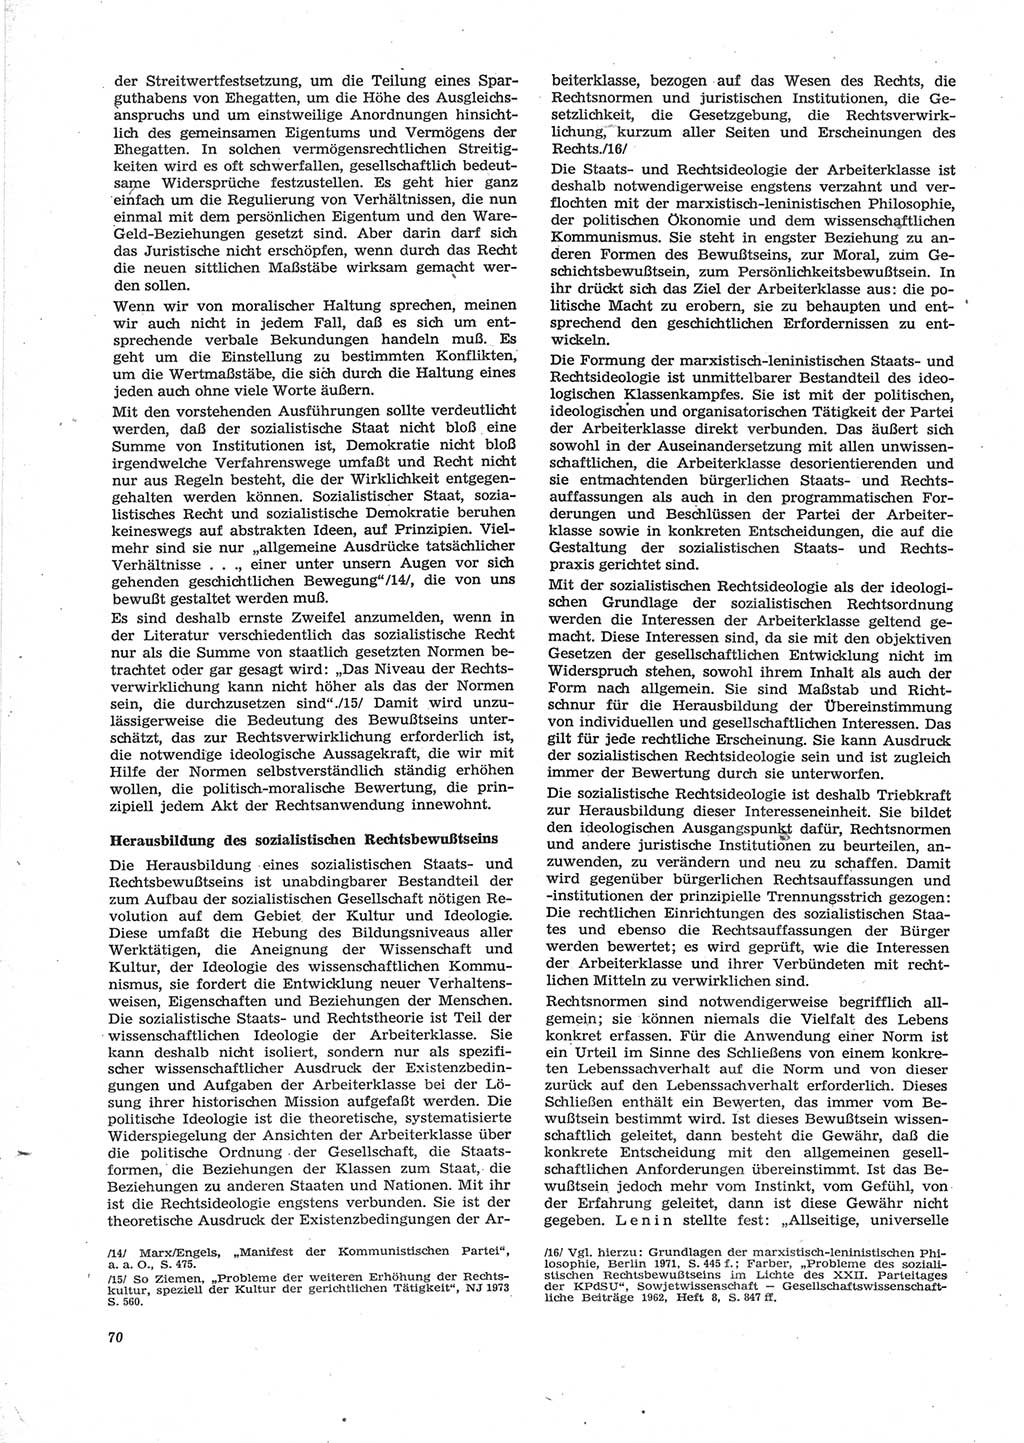 Neue Justiz (NJ), Zeitschrift für Recht und Rechtswissenschaft [Deutsche Demokratische Republik (DDR)], 28. Jahrgang 1974, Seite 70 (NJ DDR 1974, S. 70)